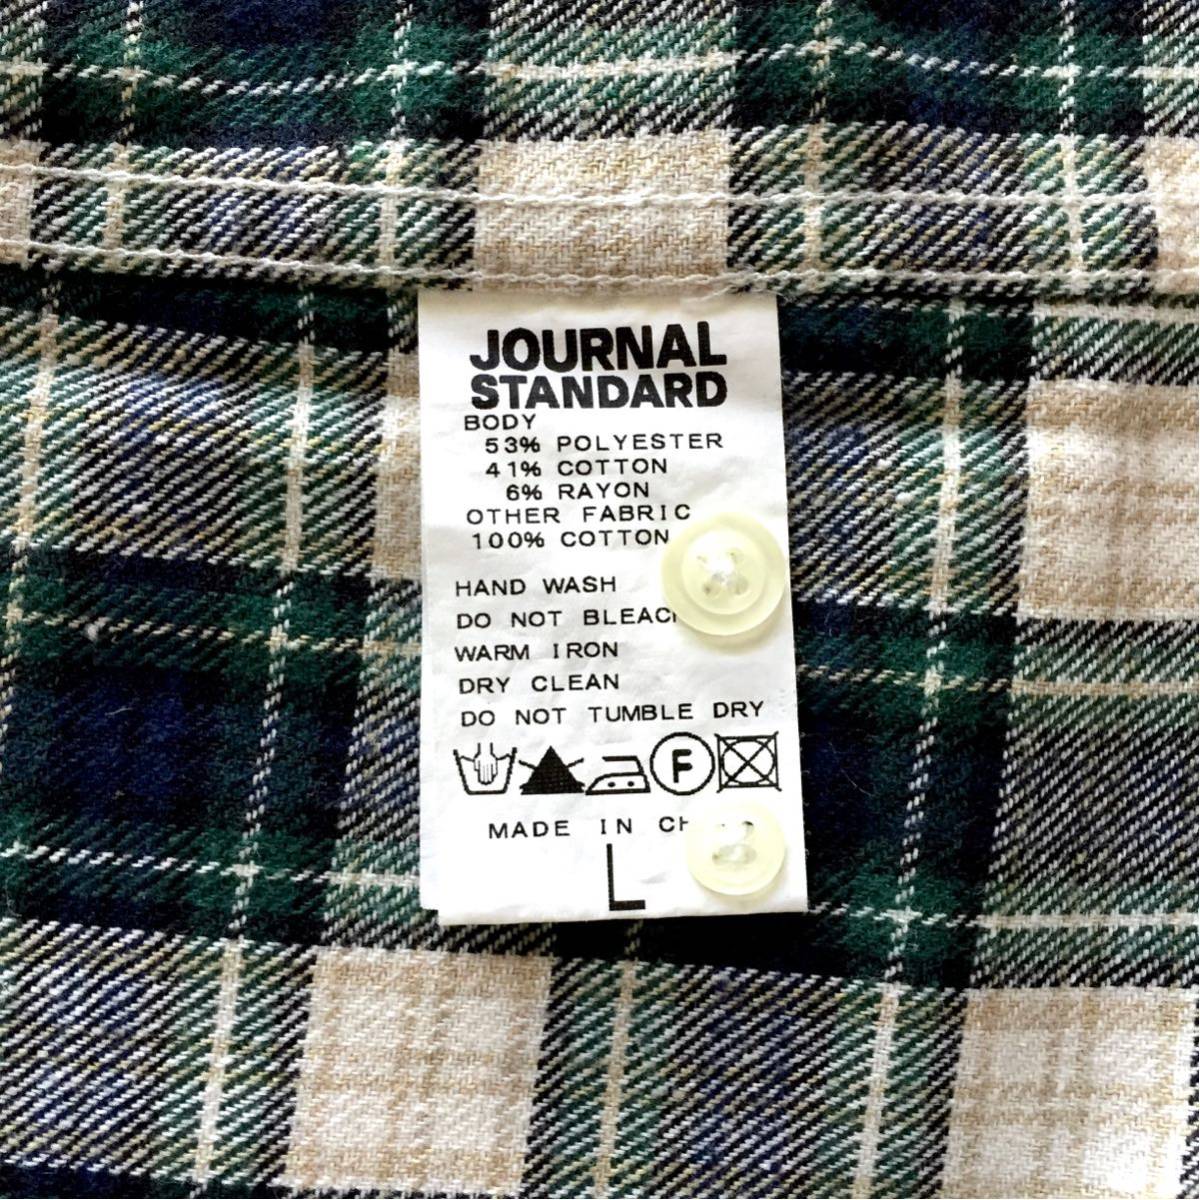 JOURNAL STANDARD Flannel Plaid shirt ジャーナルスタンダード フランネル チェックフランネルシャツ Lサイズ ワークウェア 綿フランネル_画像9